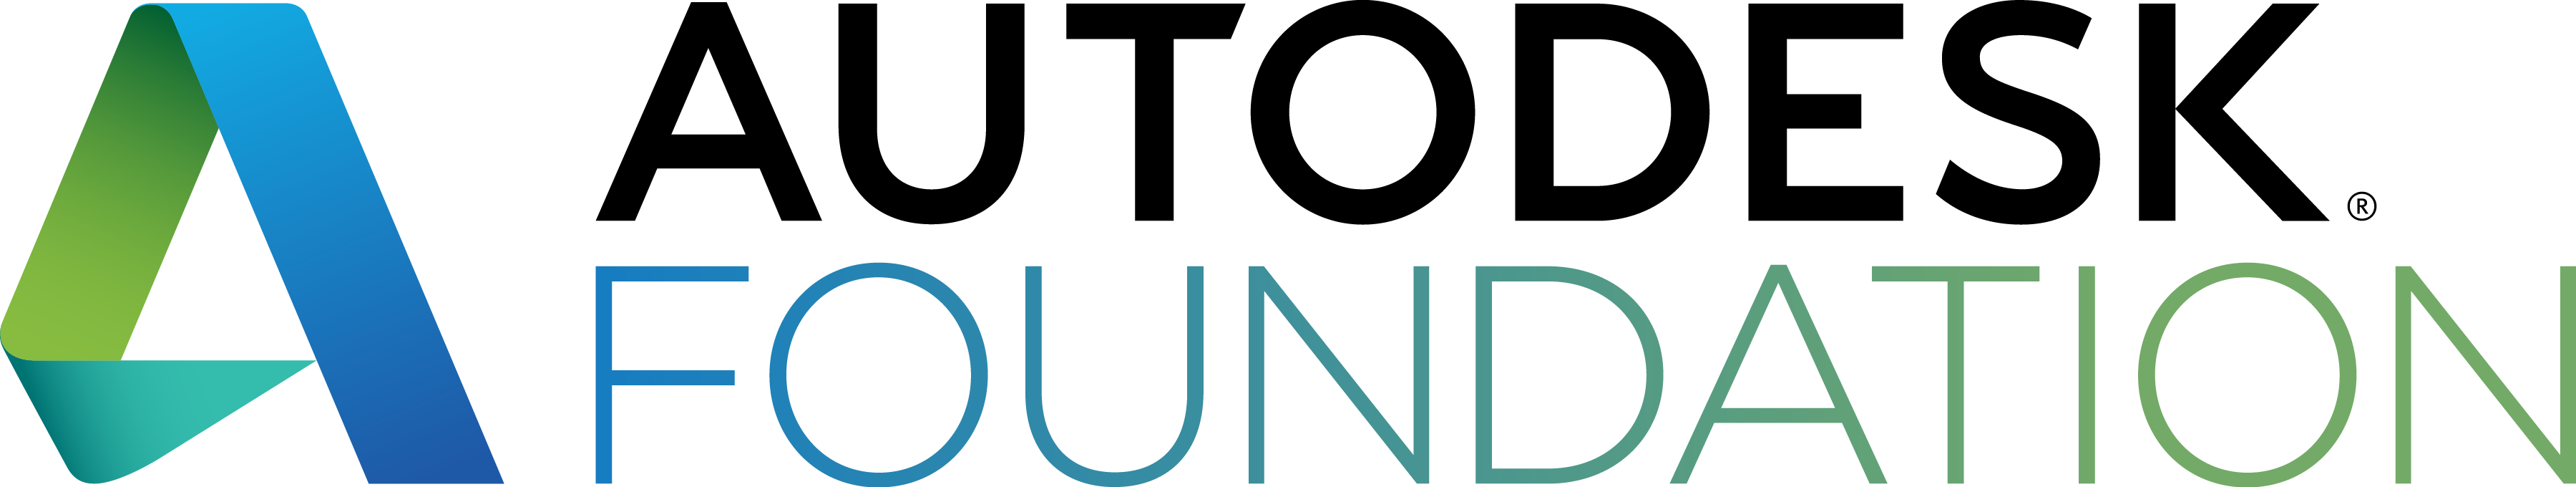 Autodesk Foundation Logo